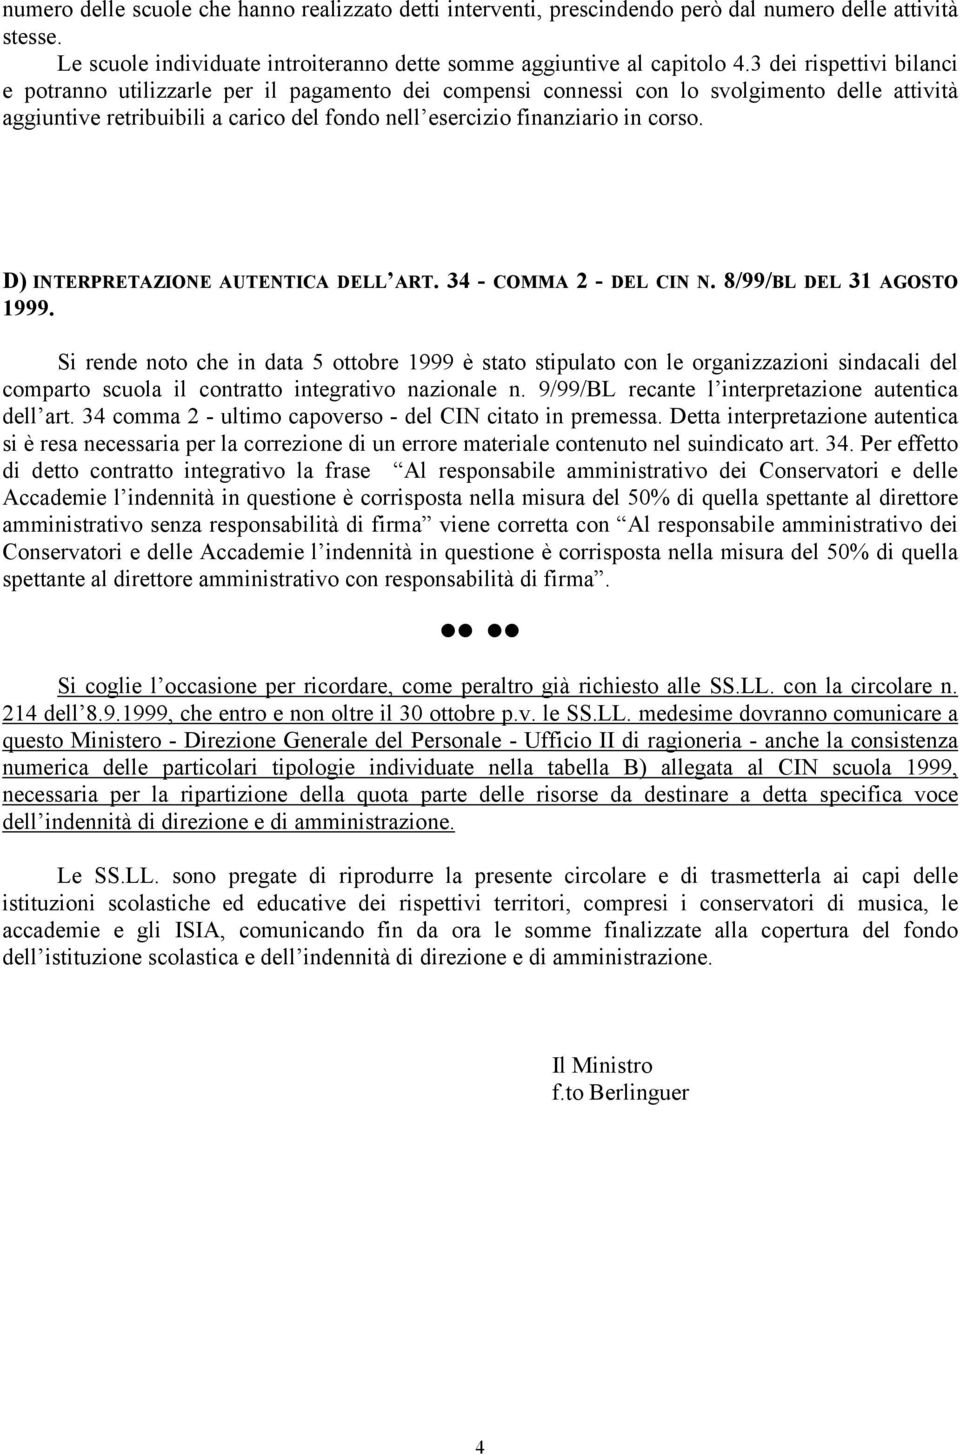 D) INTERPRETAZIONE AUTENTICA DELL ART. 34 - COMMA 2 - DEL CIN N. 8/99/BL DEL 31 AGOSTO 1999.